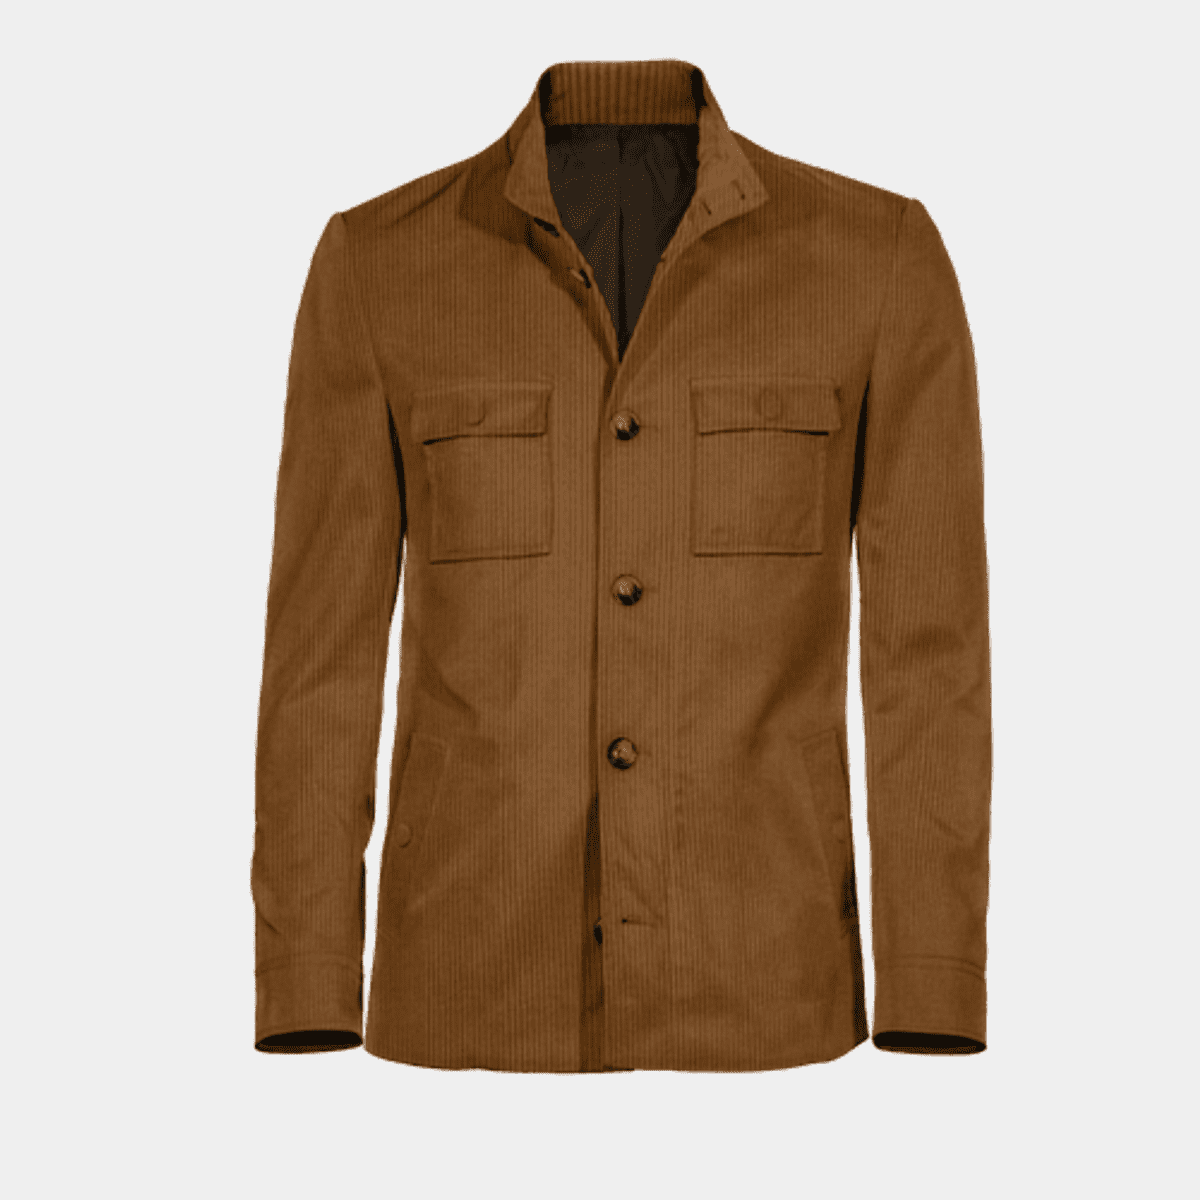 Brown cotton Field jacket